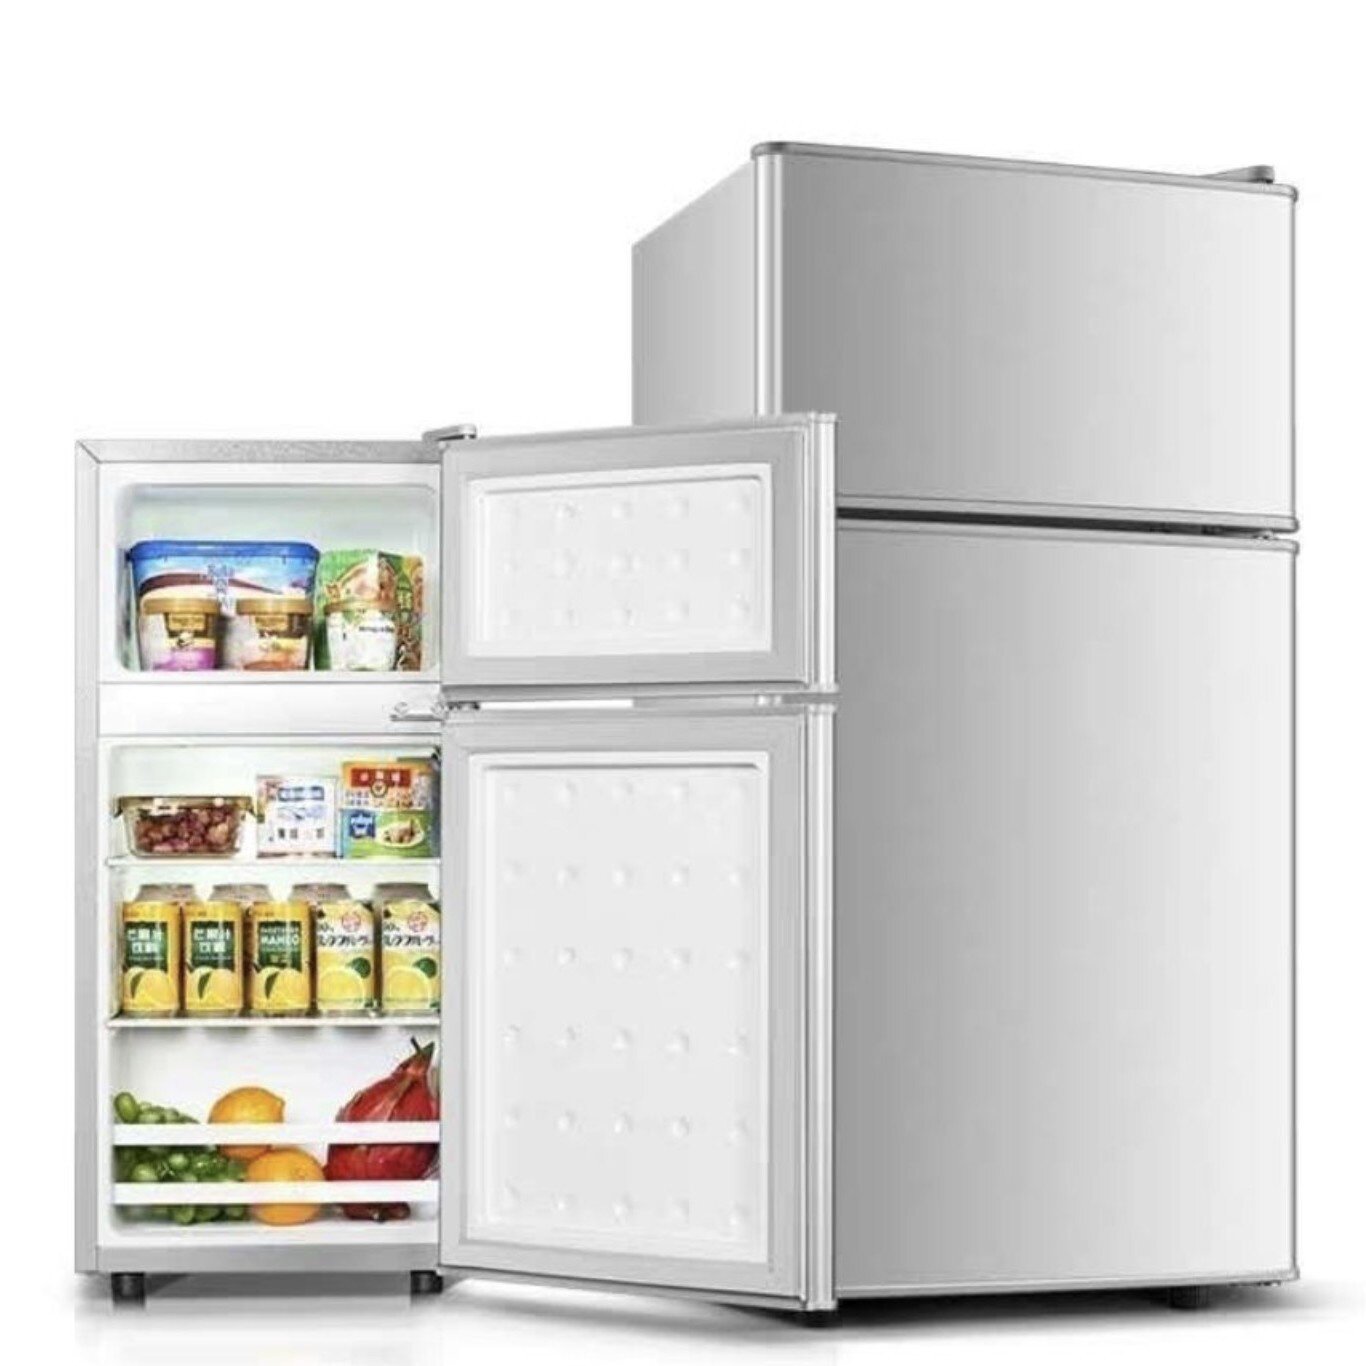 新品压缩机袖珍小冰箱家用两门小型二人小冰箱迷你宿舍租房电冰箱